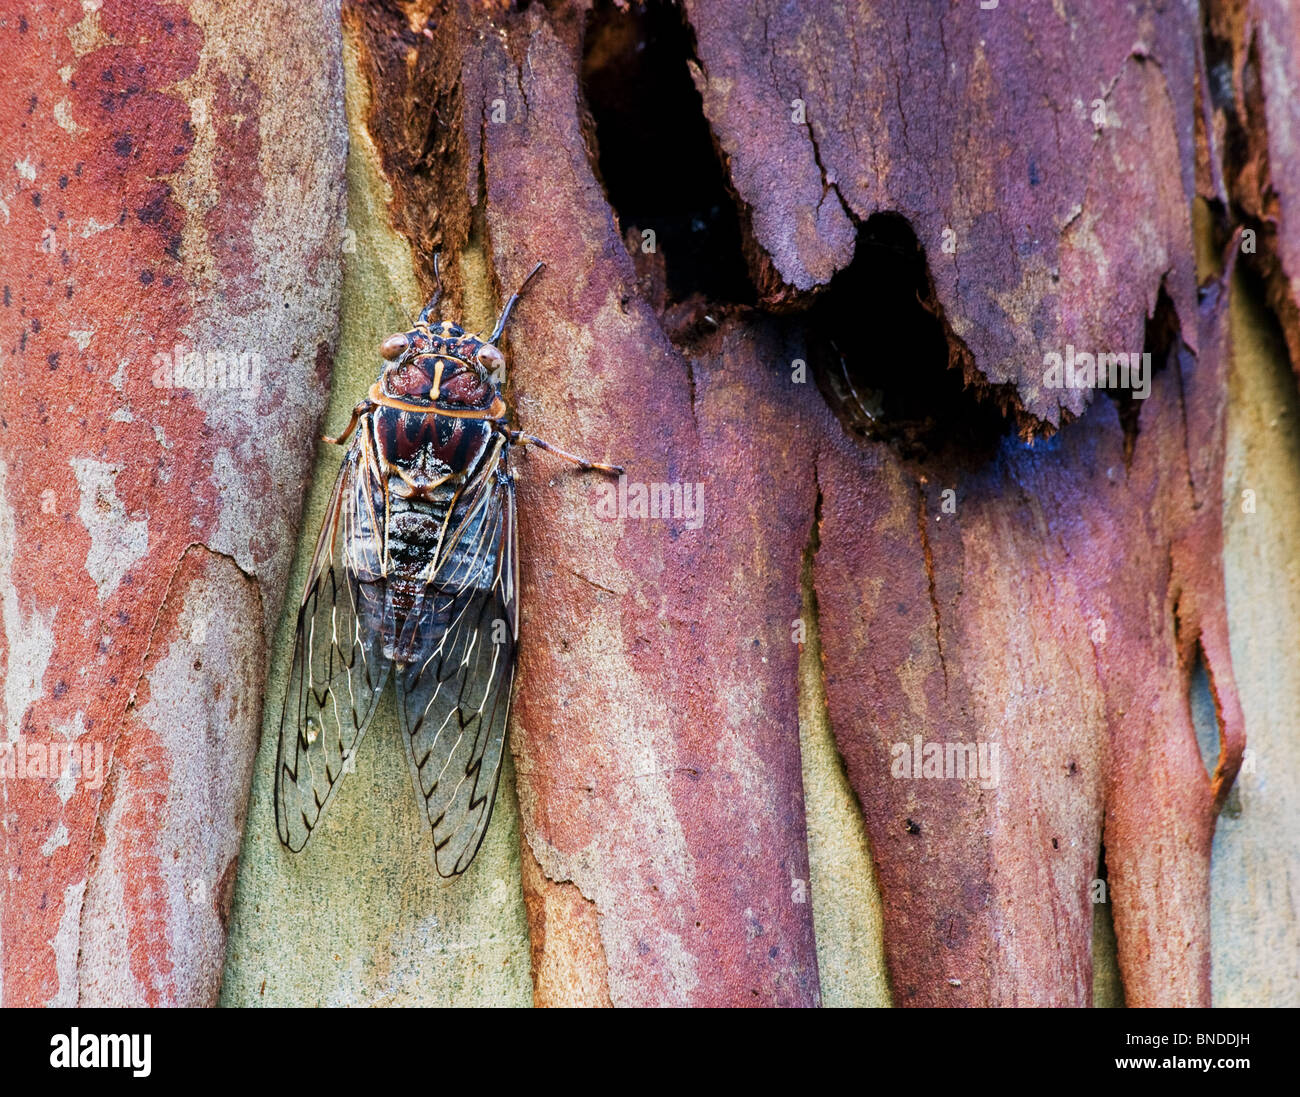 Una cicala (Cicadoidea) sulla corteccia di un albero, Barrington Tops, Australia Foto Stock